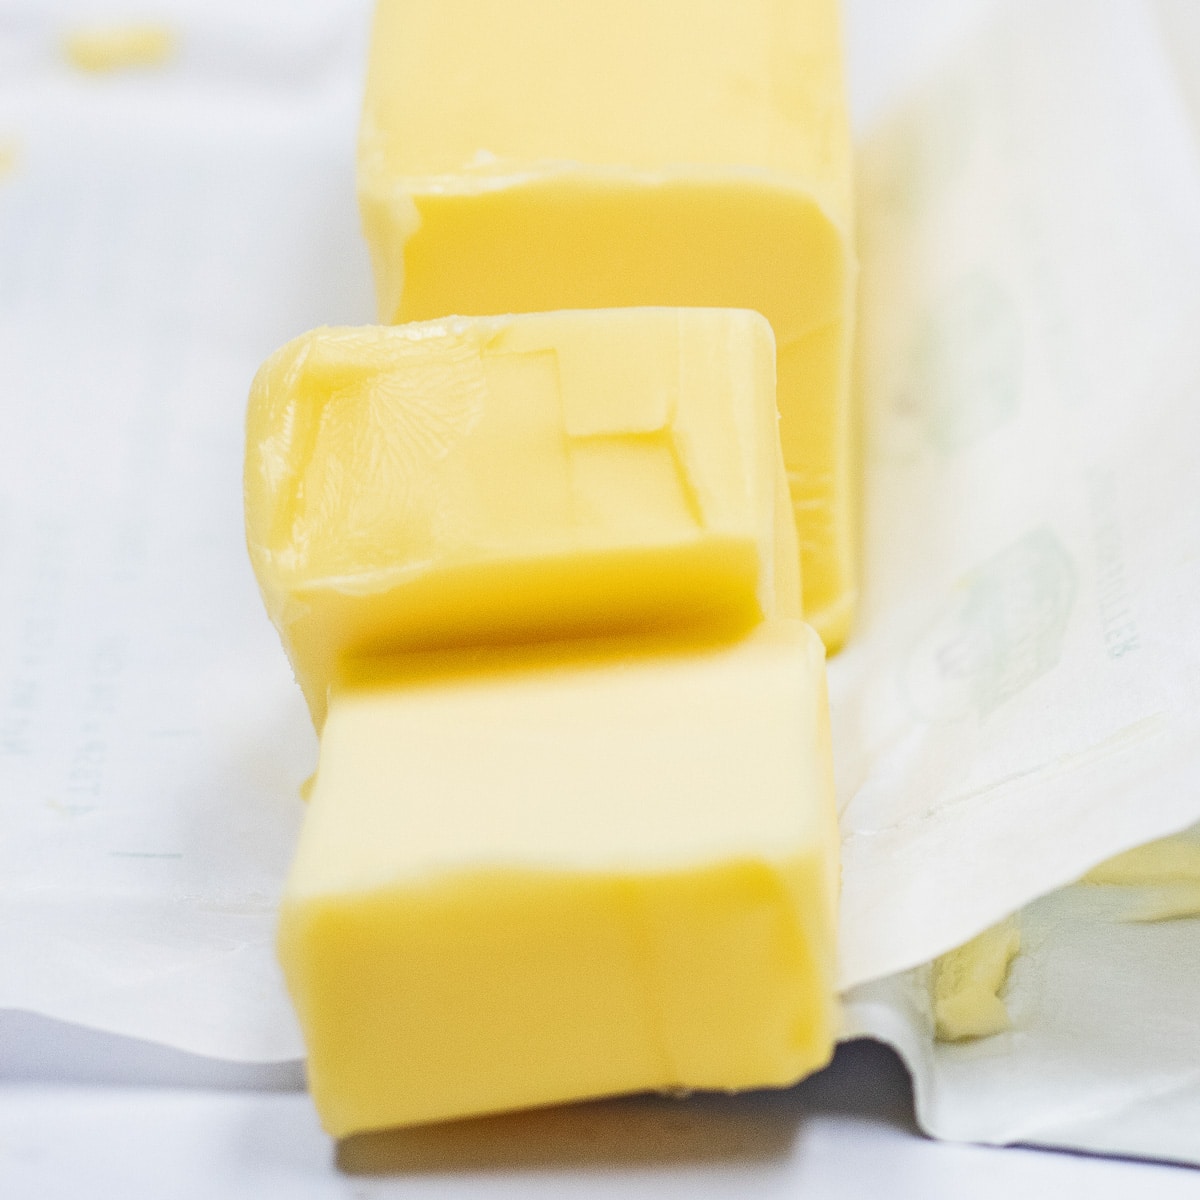 Bedste smørerstatningsmuligheder til at erstatte det skåret europæiske smør vist her.